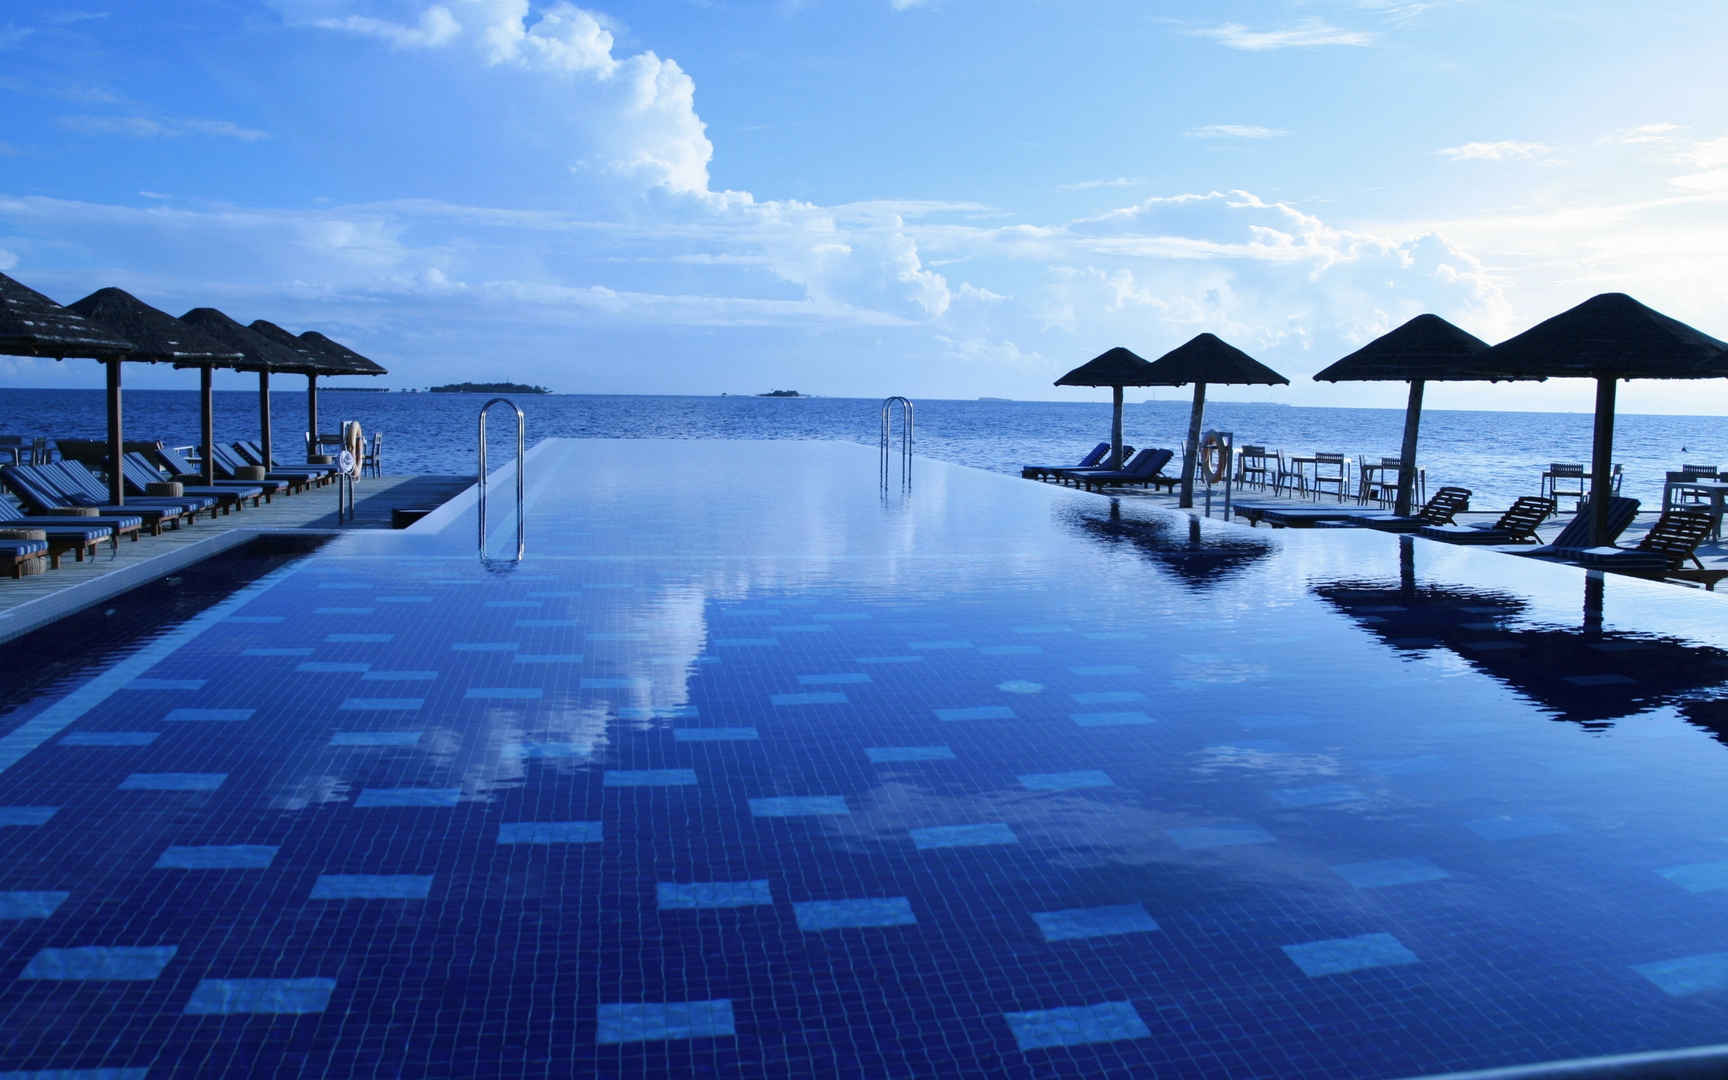 马尔代夫尼亚玛岛Two-Bedroom Ocean Pool Pavilion 两卧室海景泳池别墅,尼亚玛岛酒店攻略 - wee旅